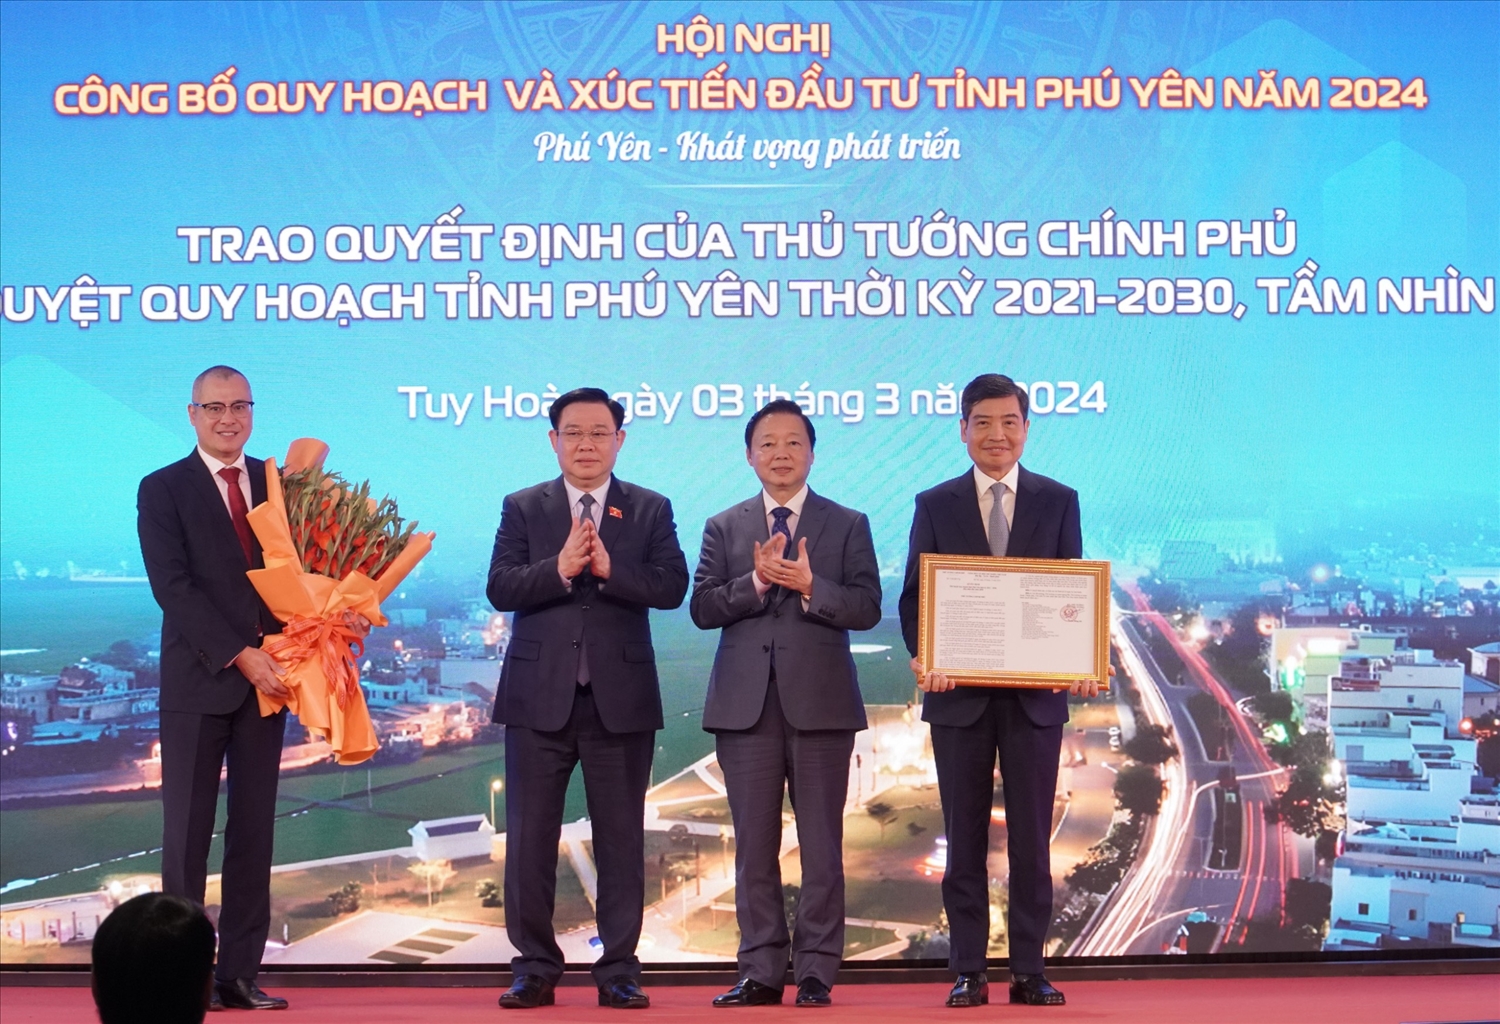 Chủ tịch Quốc hội ông Vương Đình Huệ cùng Phó Thủ tướng Chính phủ Trần Hồng Hà trao quyết định của Thủ tướng chính phủ phê duyệt quy hoạch tỉnh Phú Yên thời kỳ 2021 – 2030, tầm nhìn 2030 cho lãnh đạo tỉnh Phú Yên